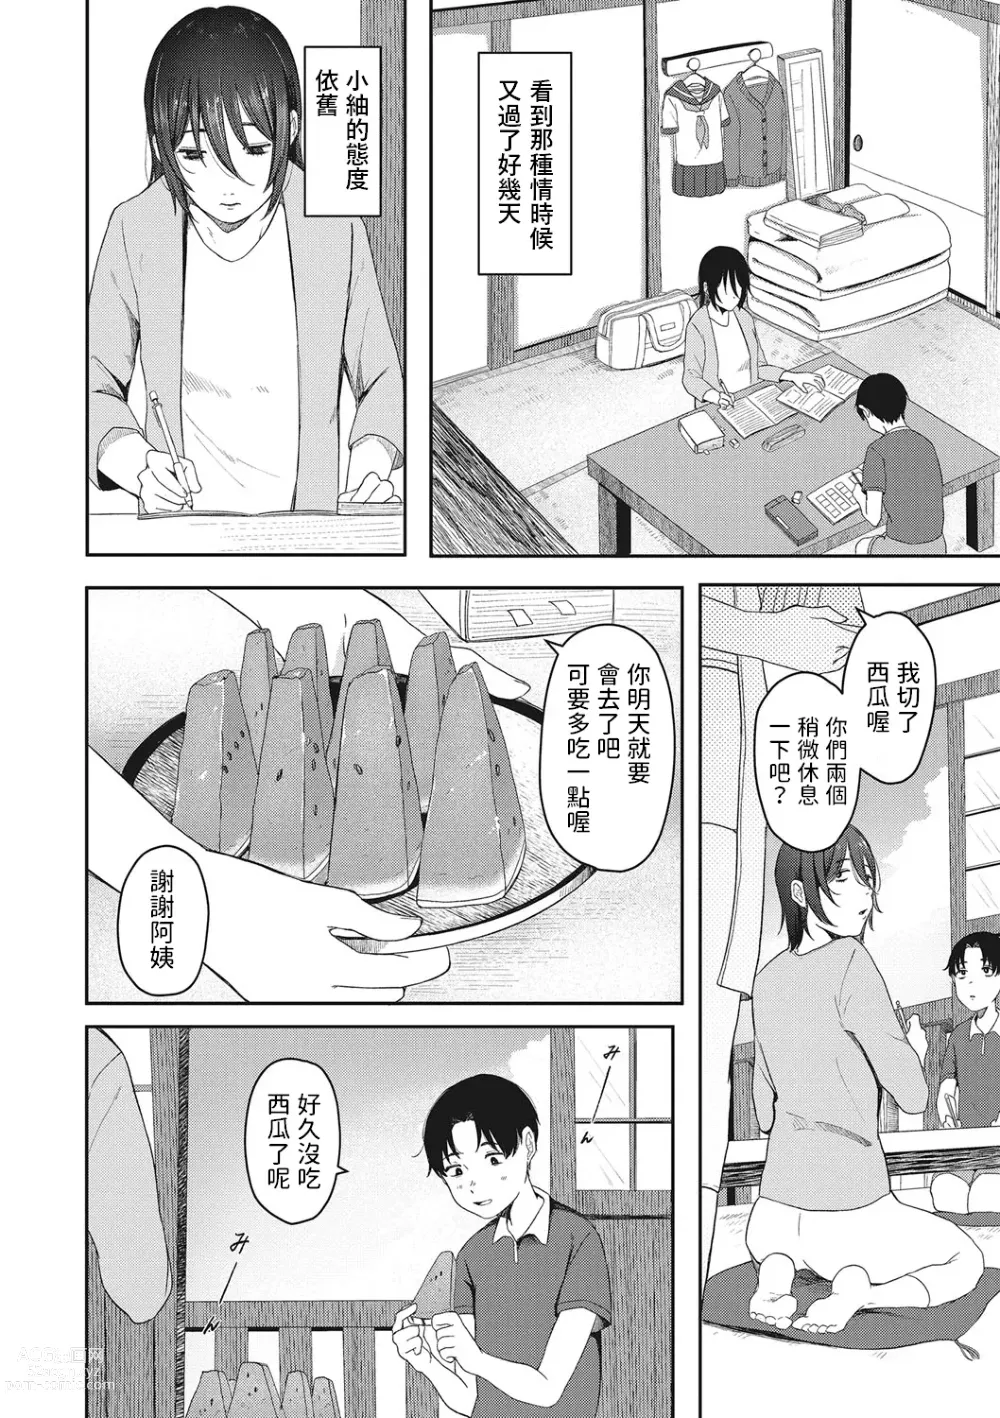 Page 8 of manga Tsuisou no Aza